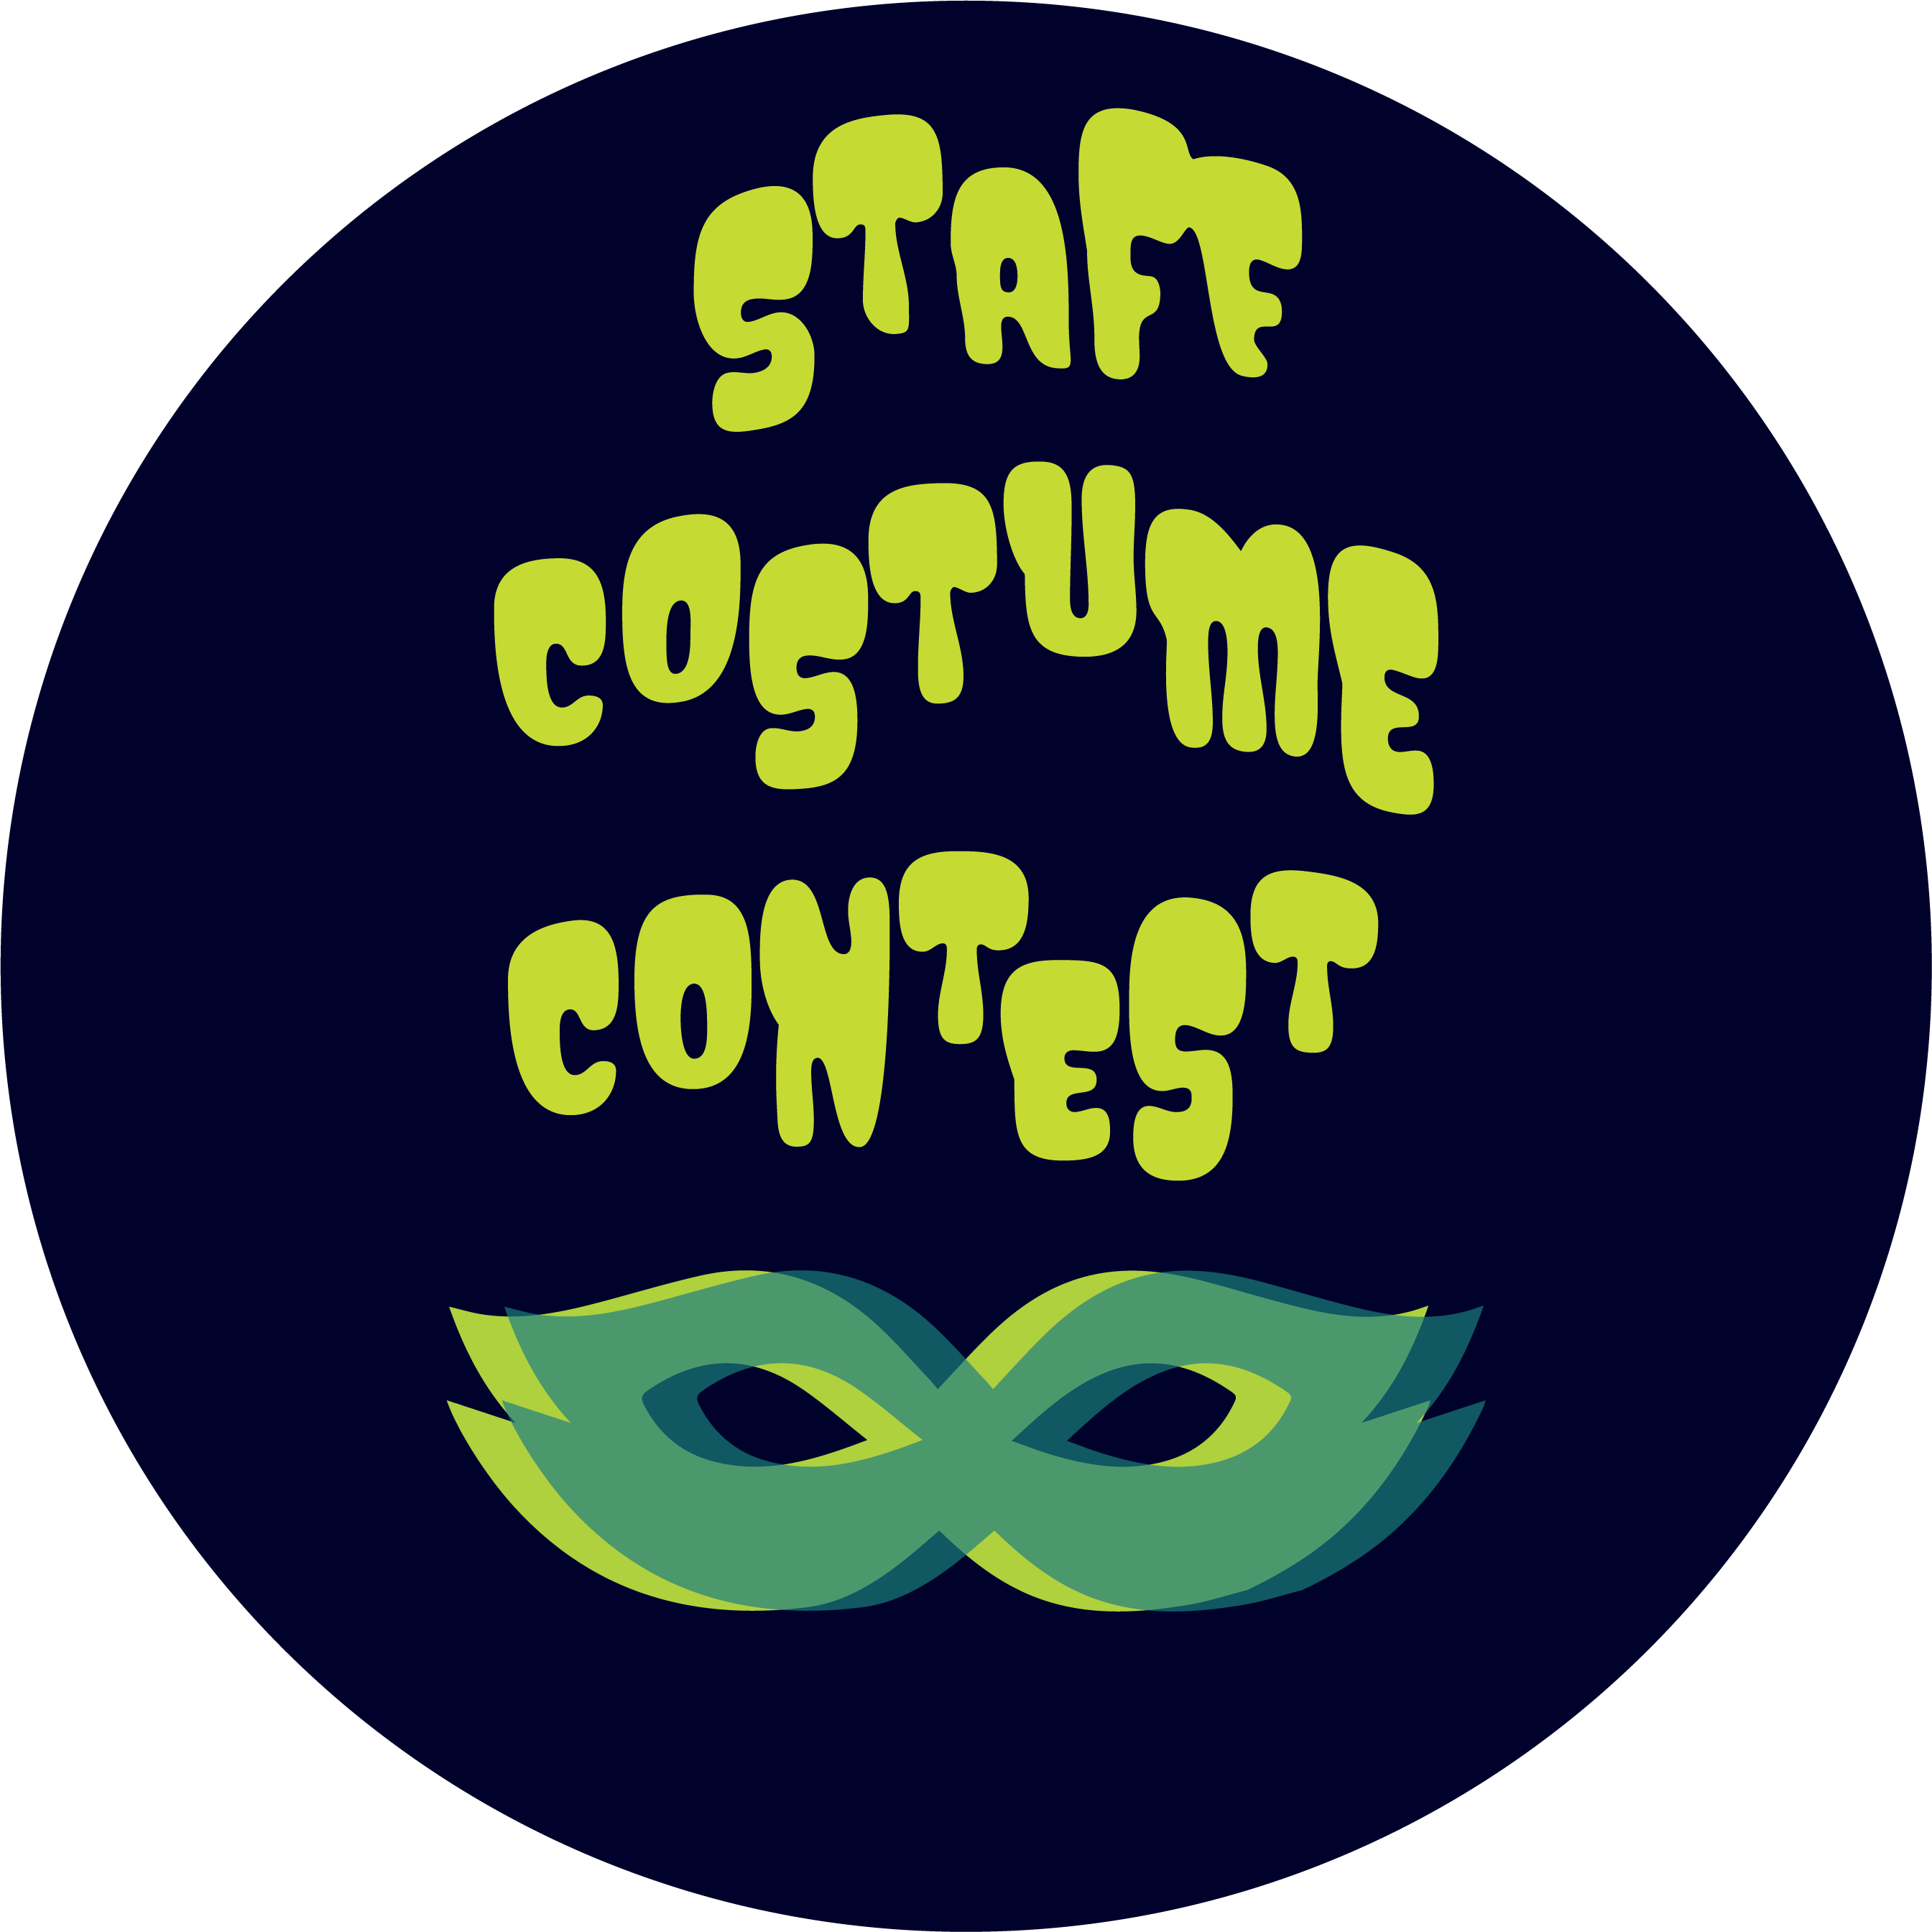 staff costume contest